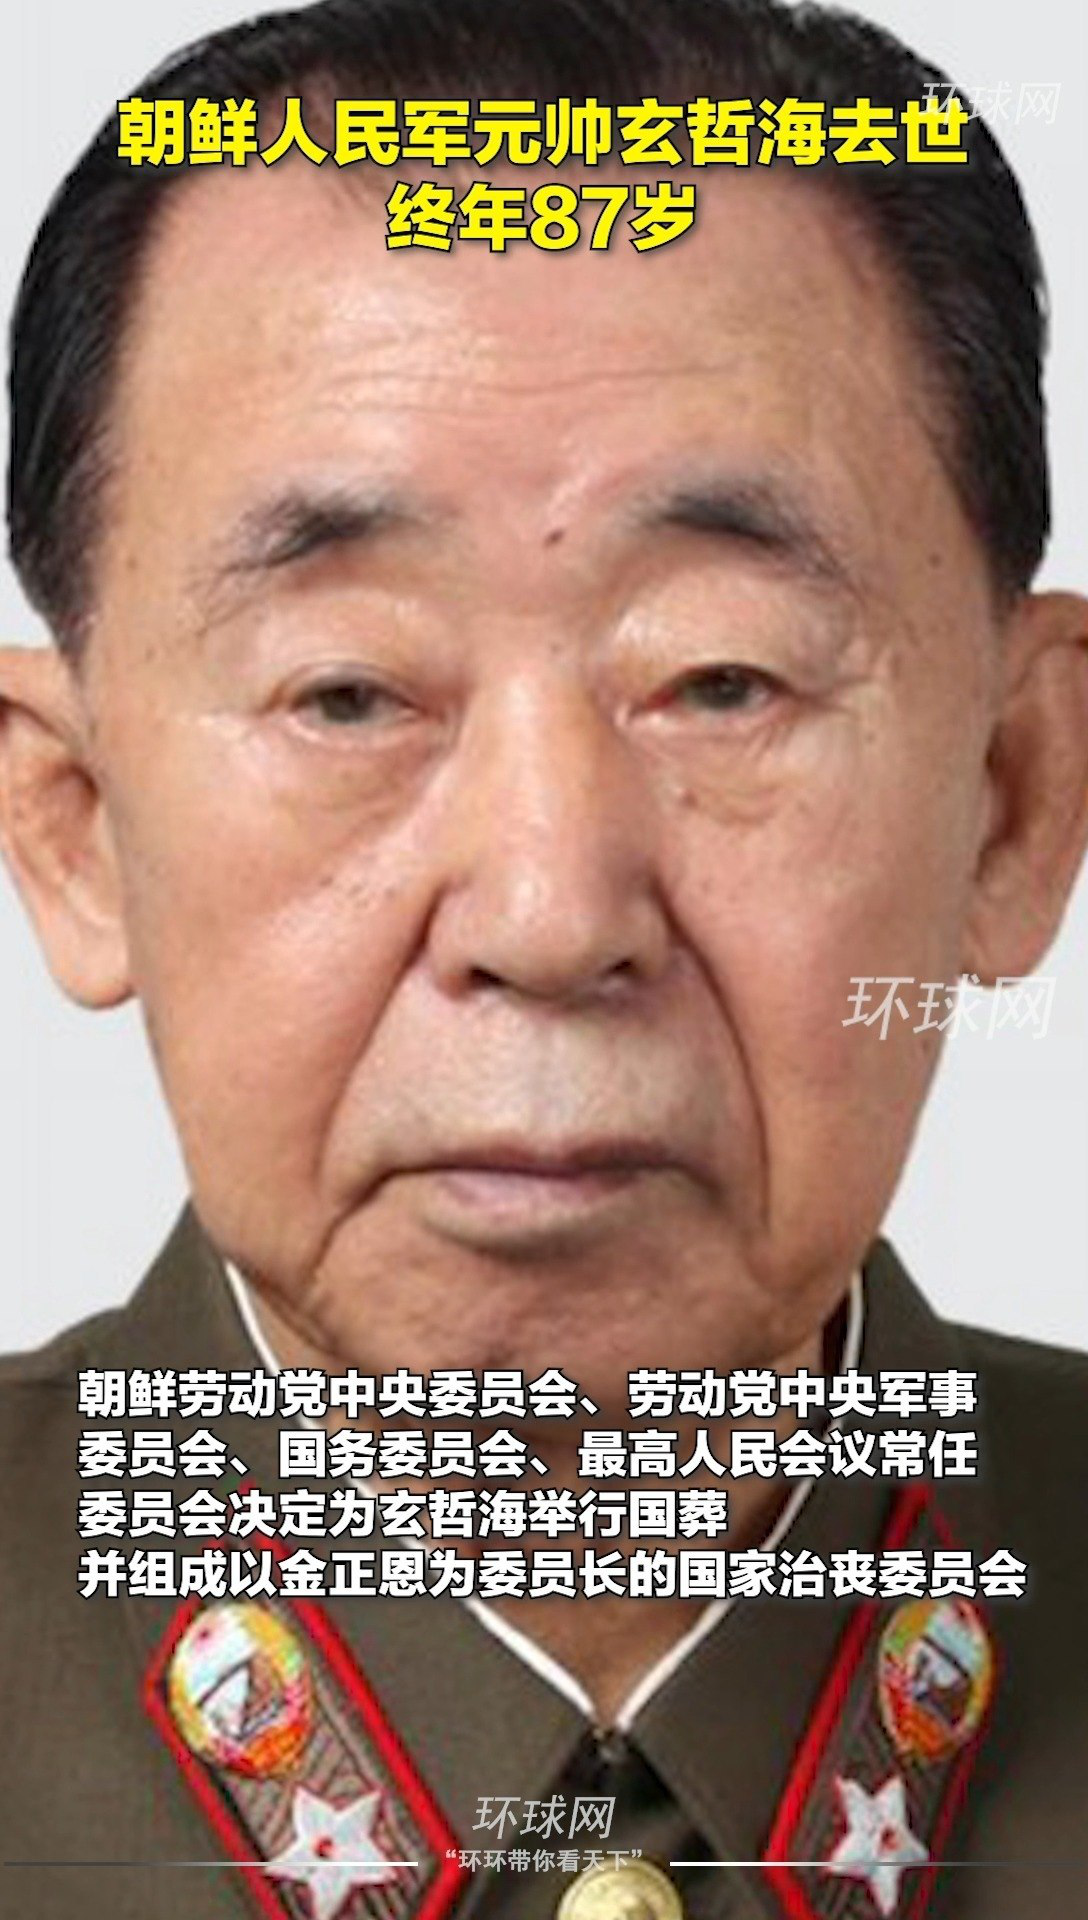 朝鲜人民军元帅玄哲海去世,终年87岁,将举行国葬